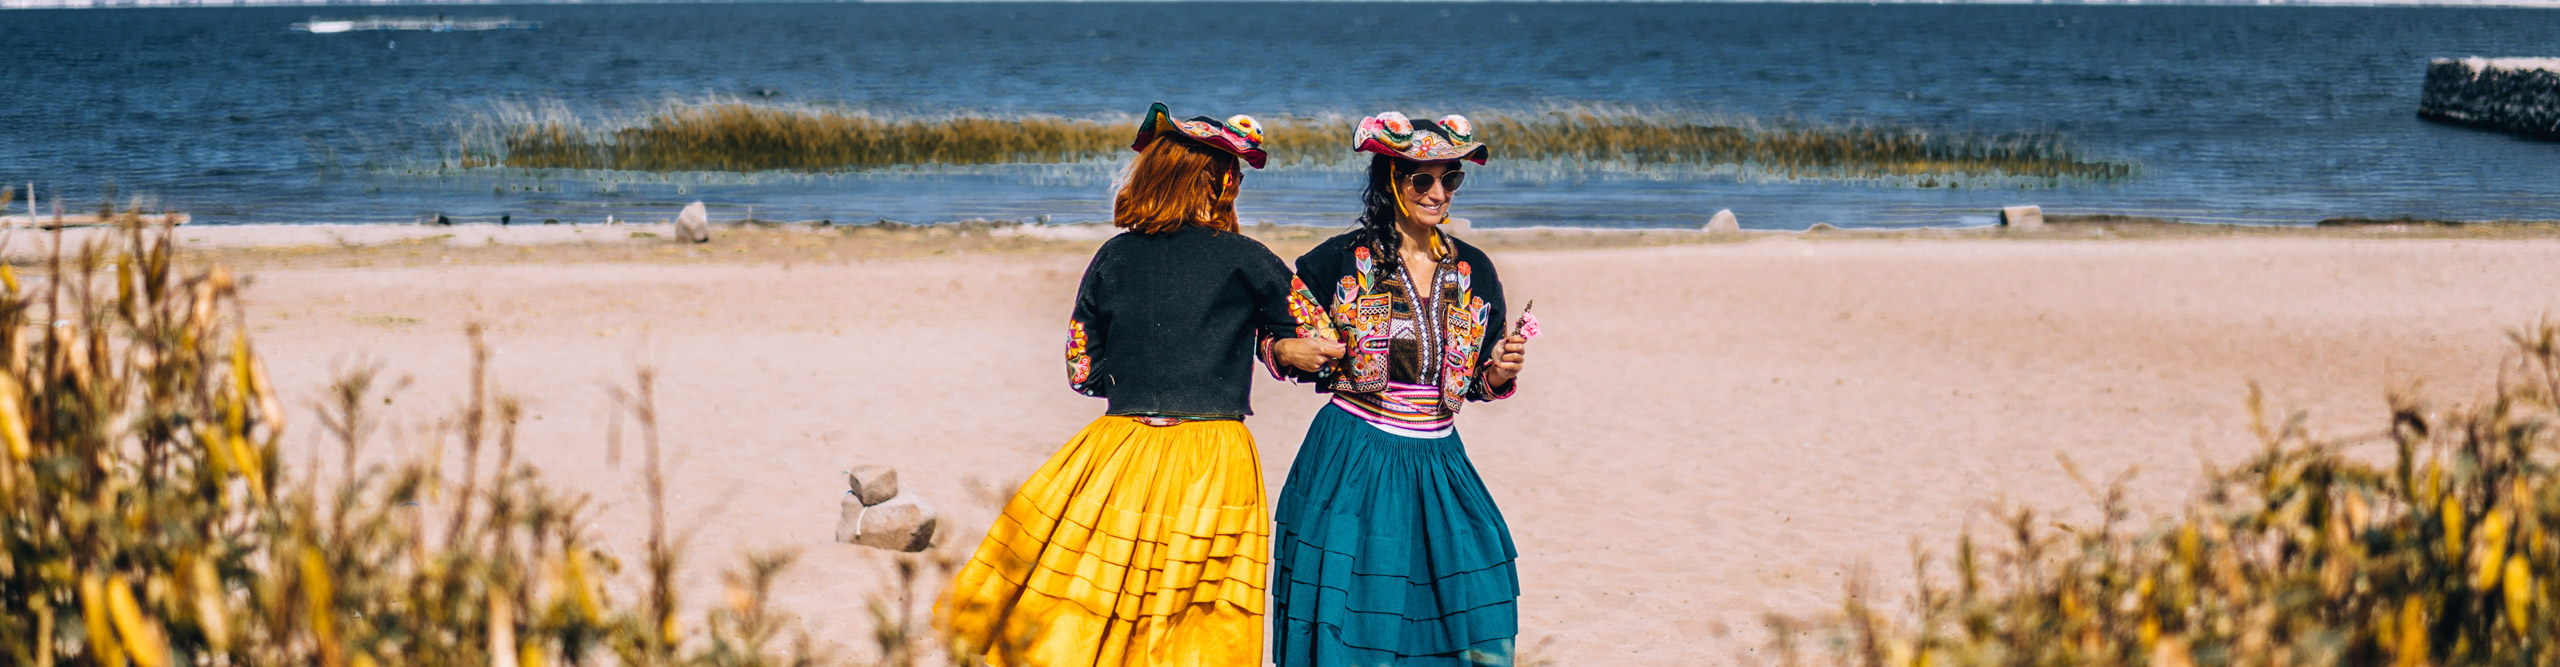 Local women on the Beach of Lake Titicaca in Peru